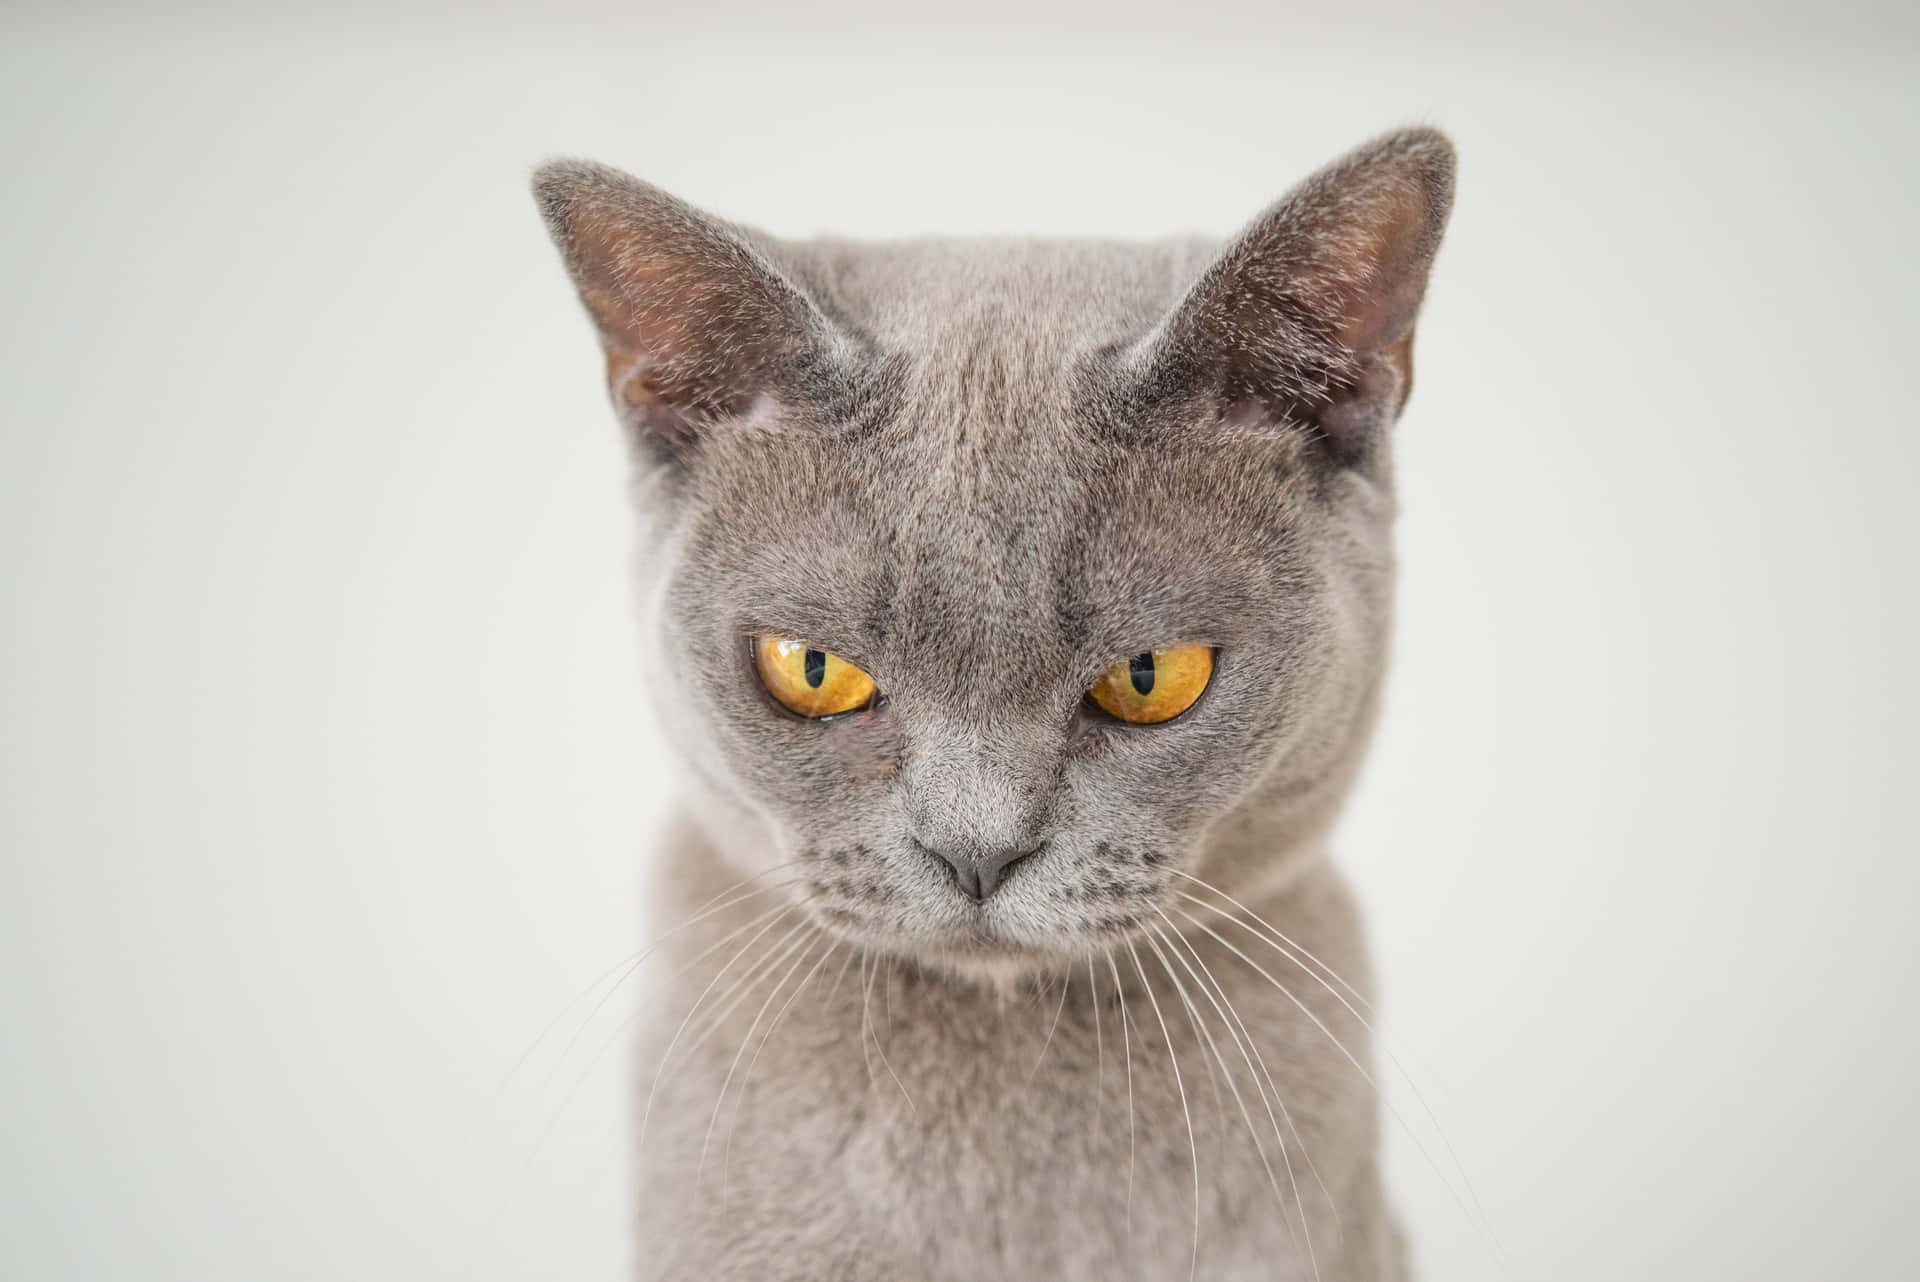 Einegraue Katze Mit Gelben Augen Schaut In Die Kamera.